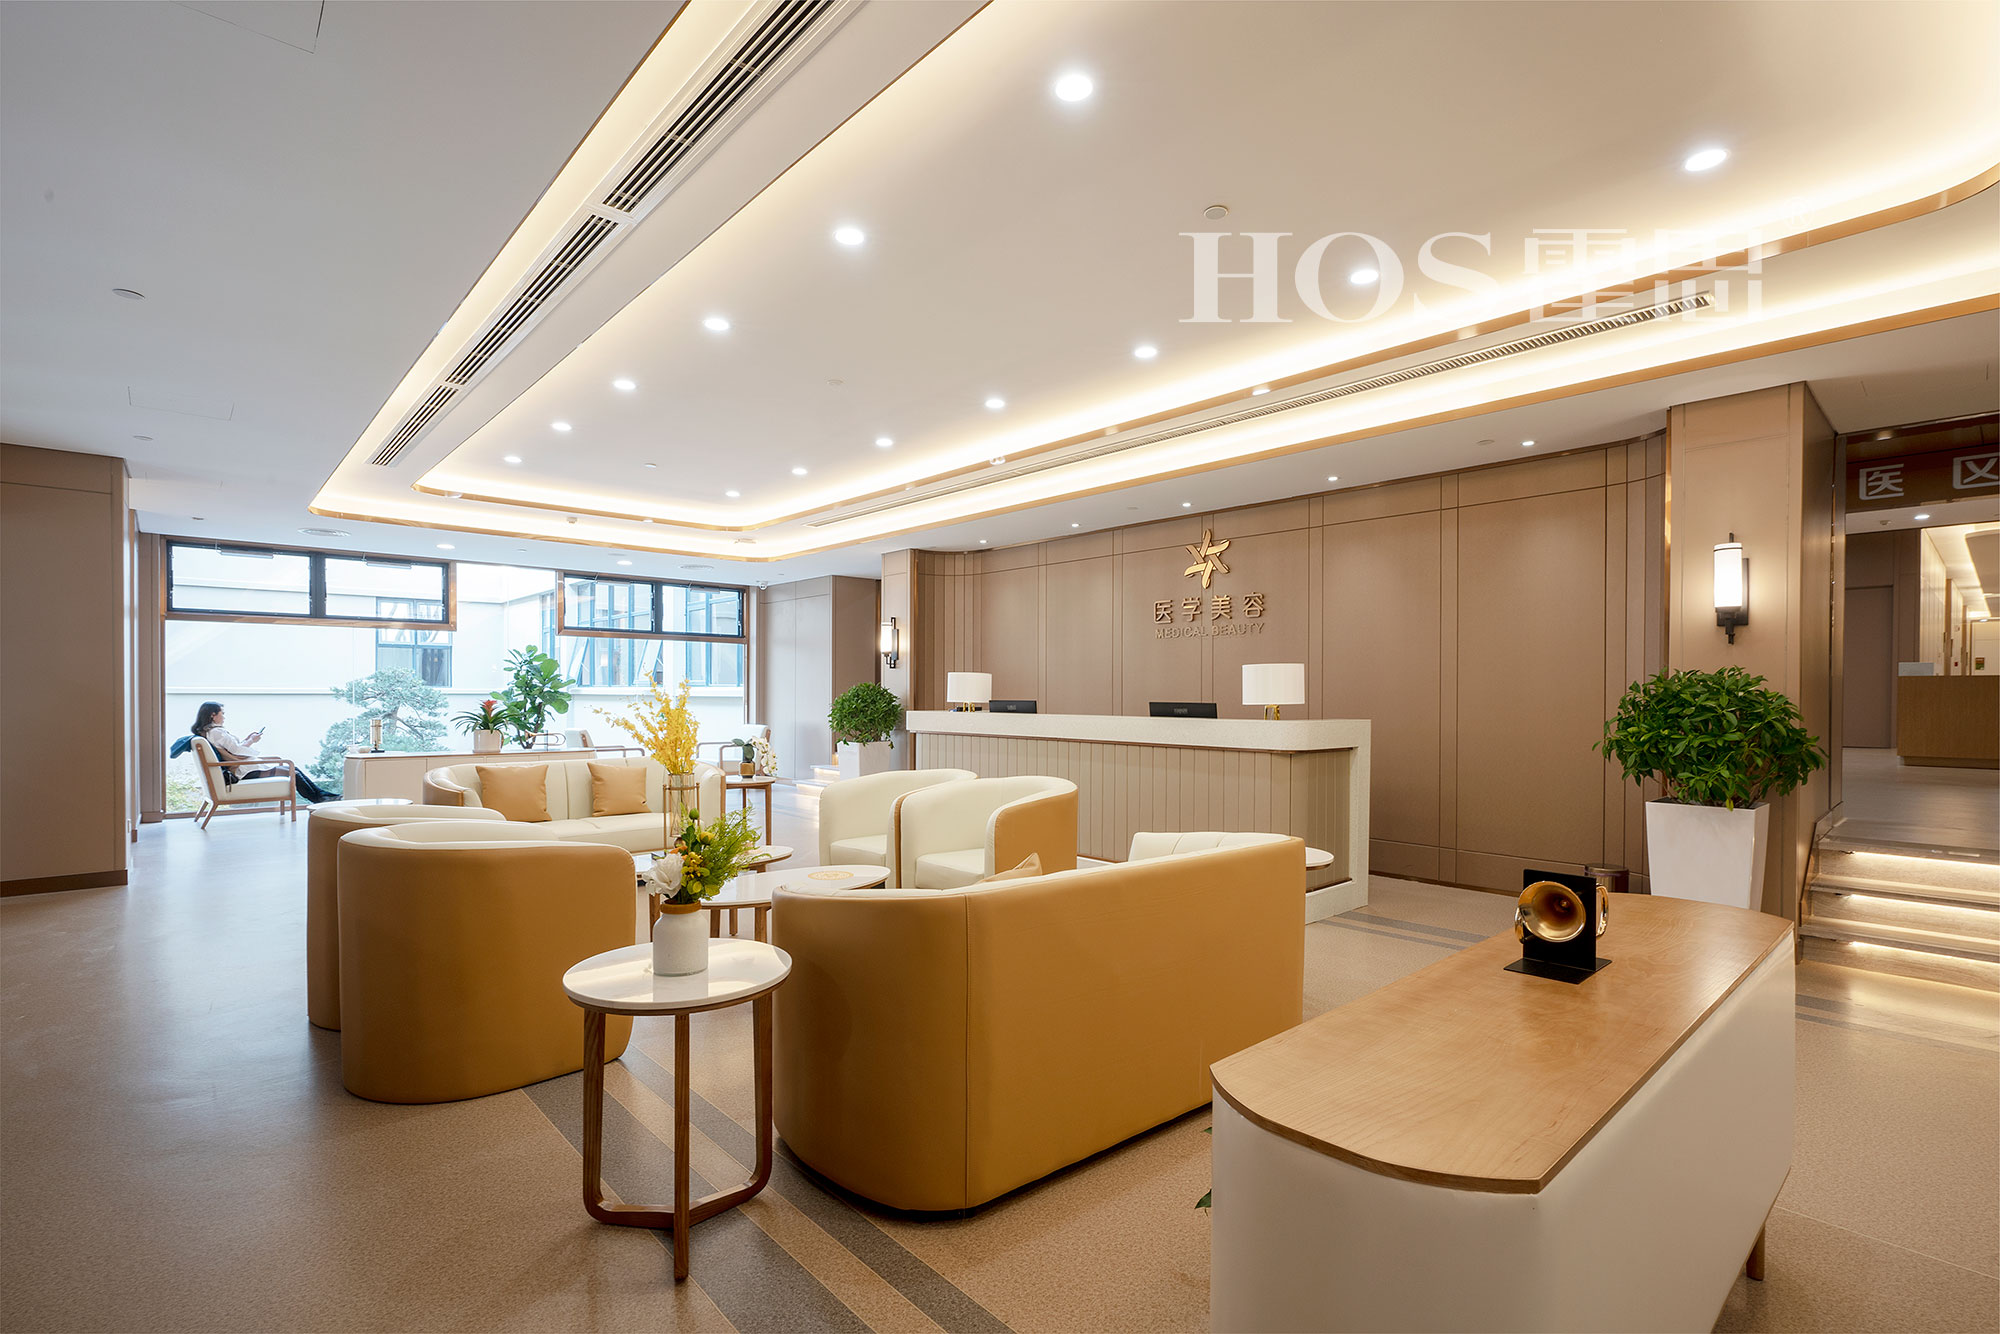 17年专业设计医院上海霍思医疗设计